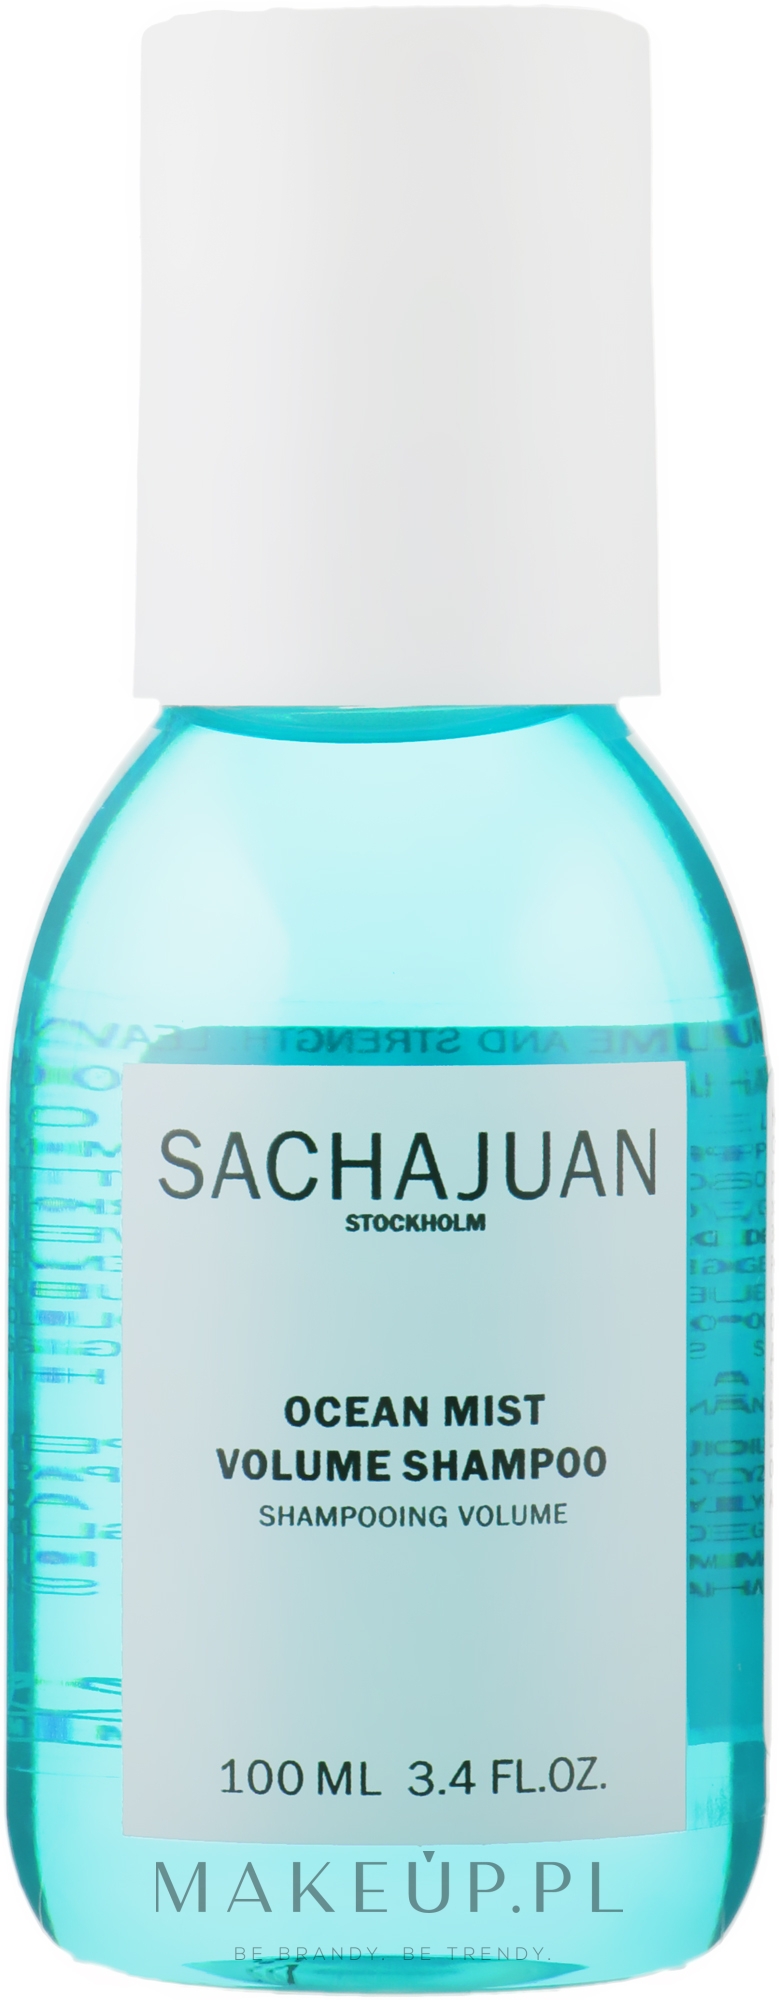 Wzmacniający szampon zwiększający objętość i gęstość włosów - Sachajuan Ocean Mist Volume Shampoo — Zdjęcie 100 ml